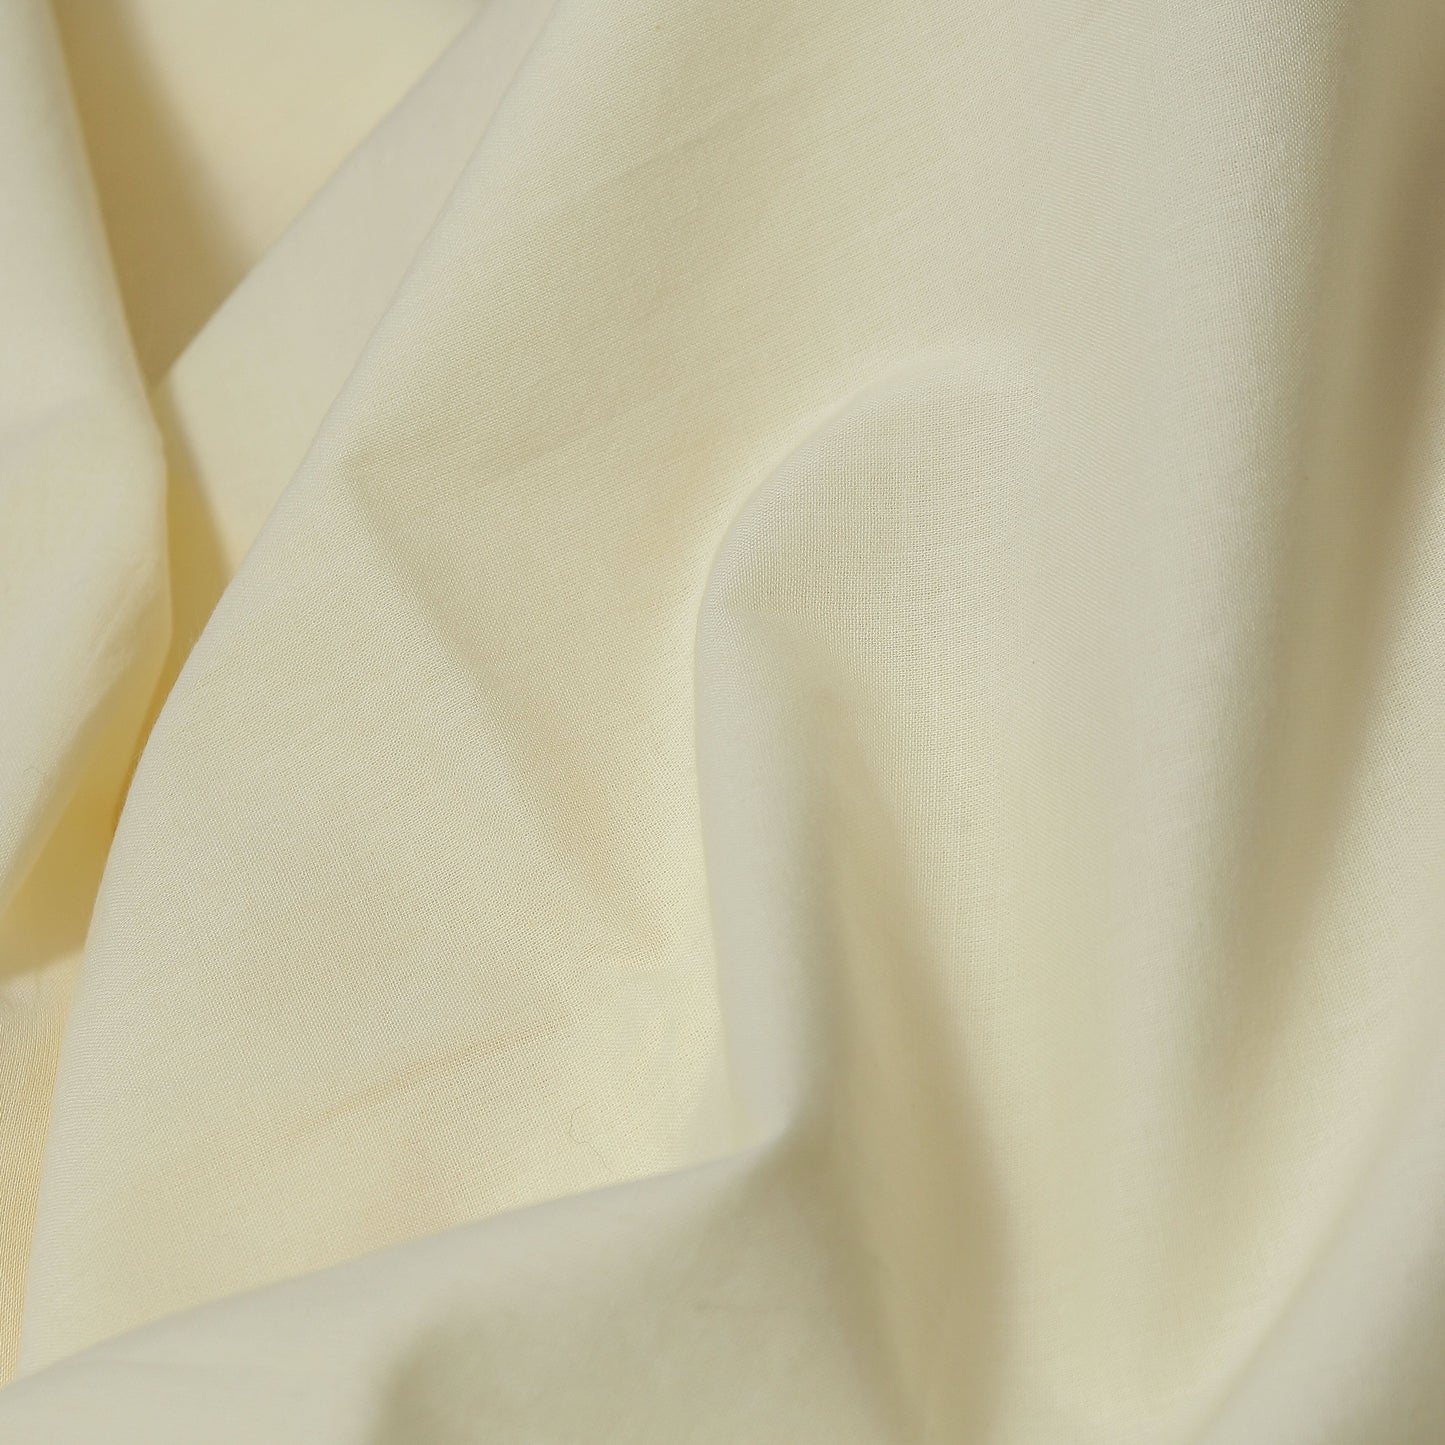 Cotton Slub Red Kurta Fabric (2.5 Meters) | and Plain Dyed Pure Cotton Pyjama (2.5 Meters)